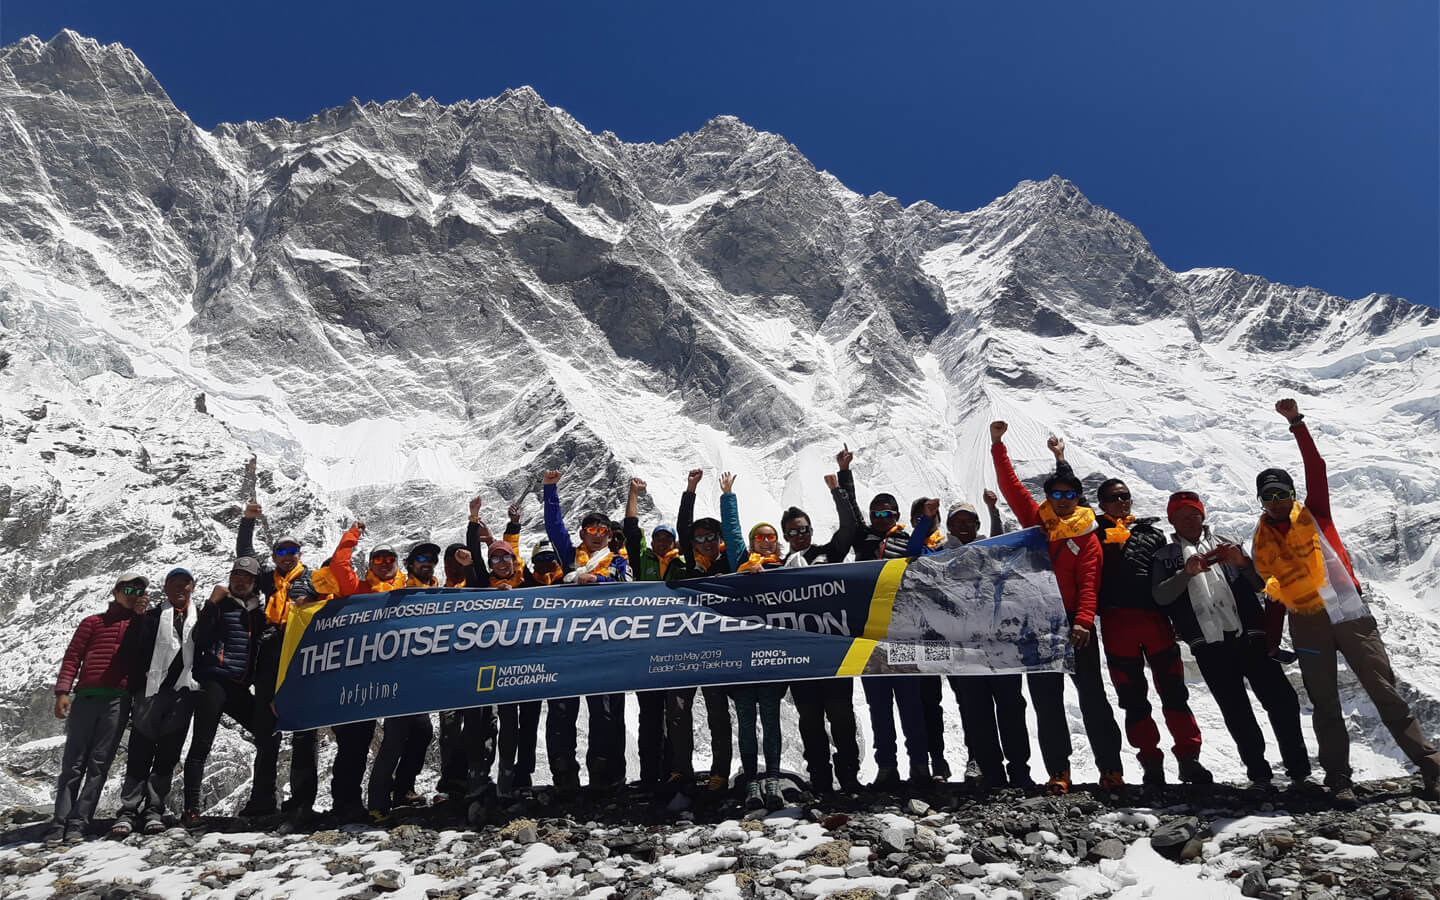 Hong Sung Taek S Lhotse South Face Expedition Defytime